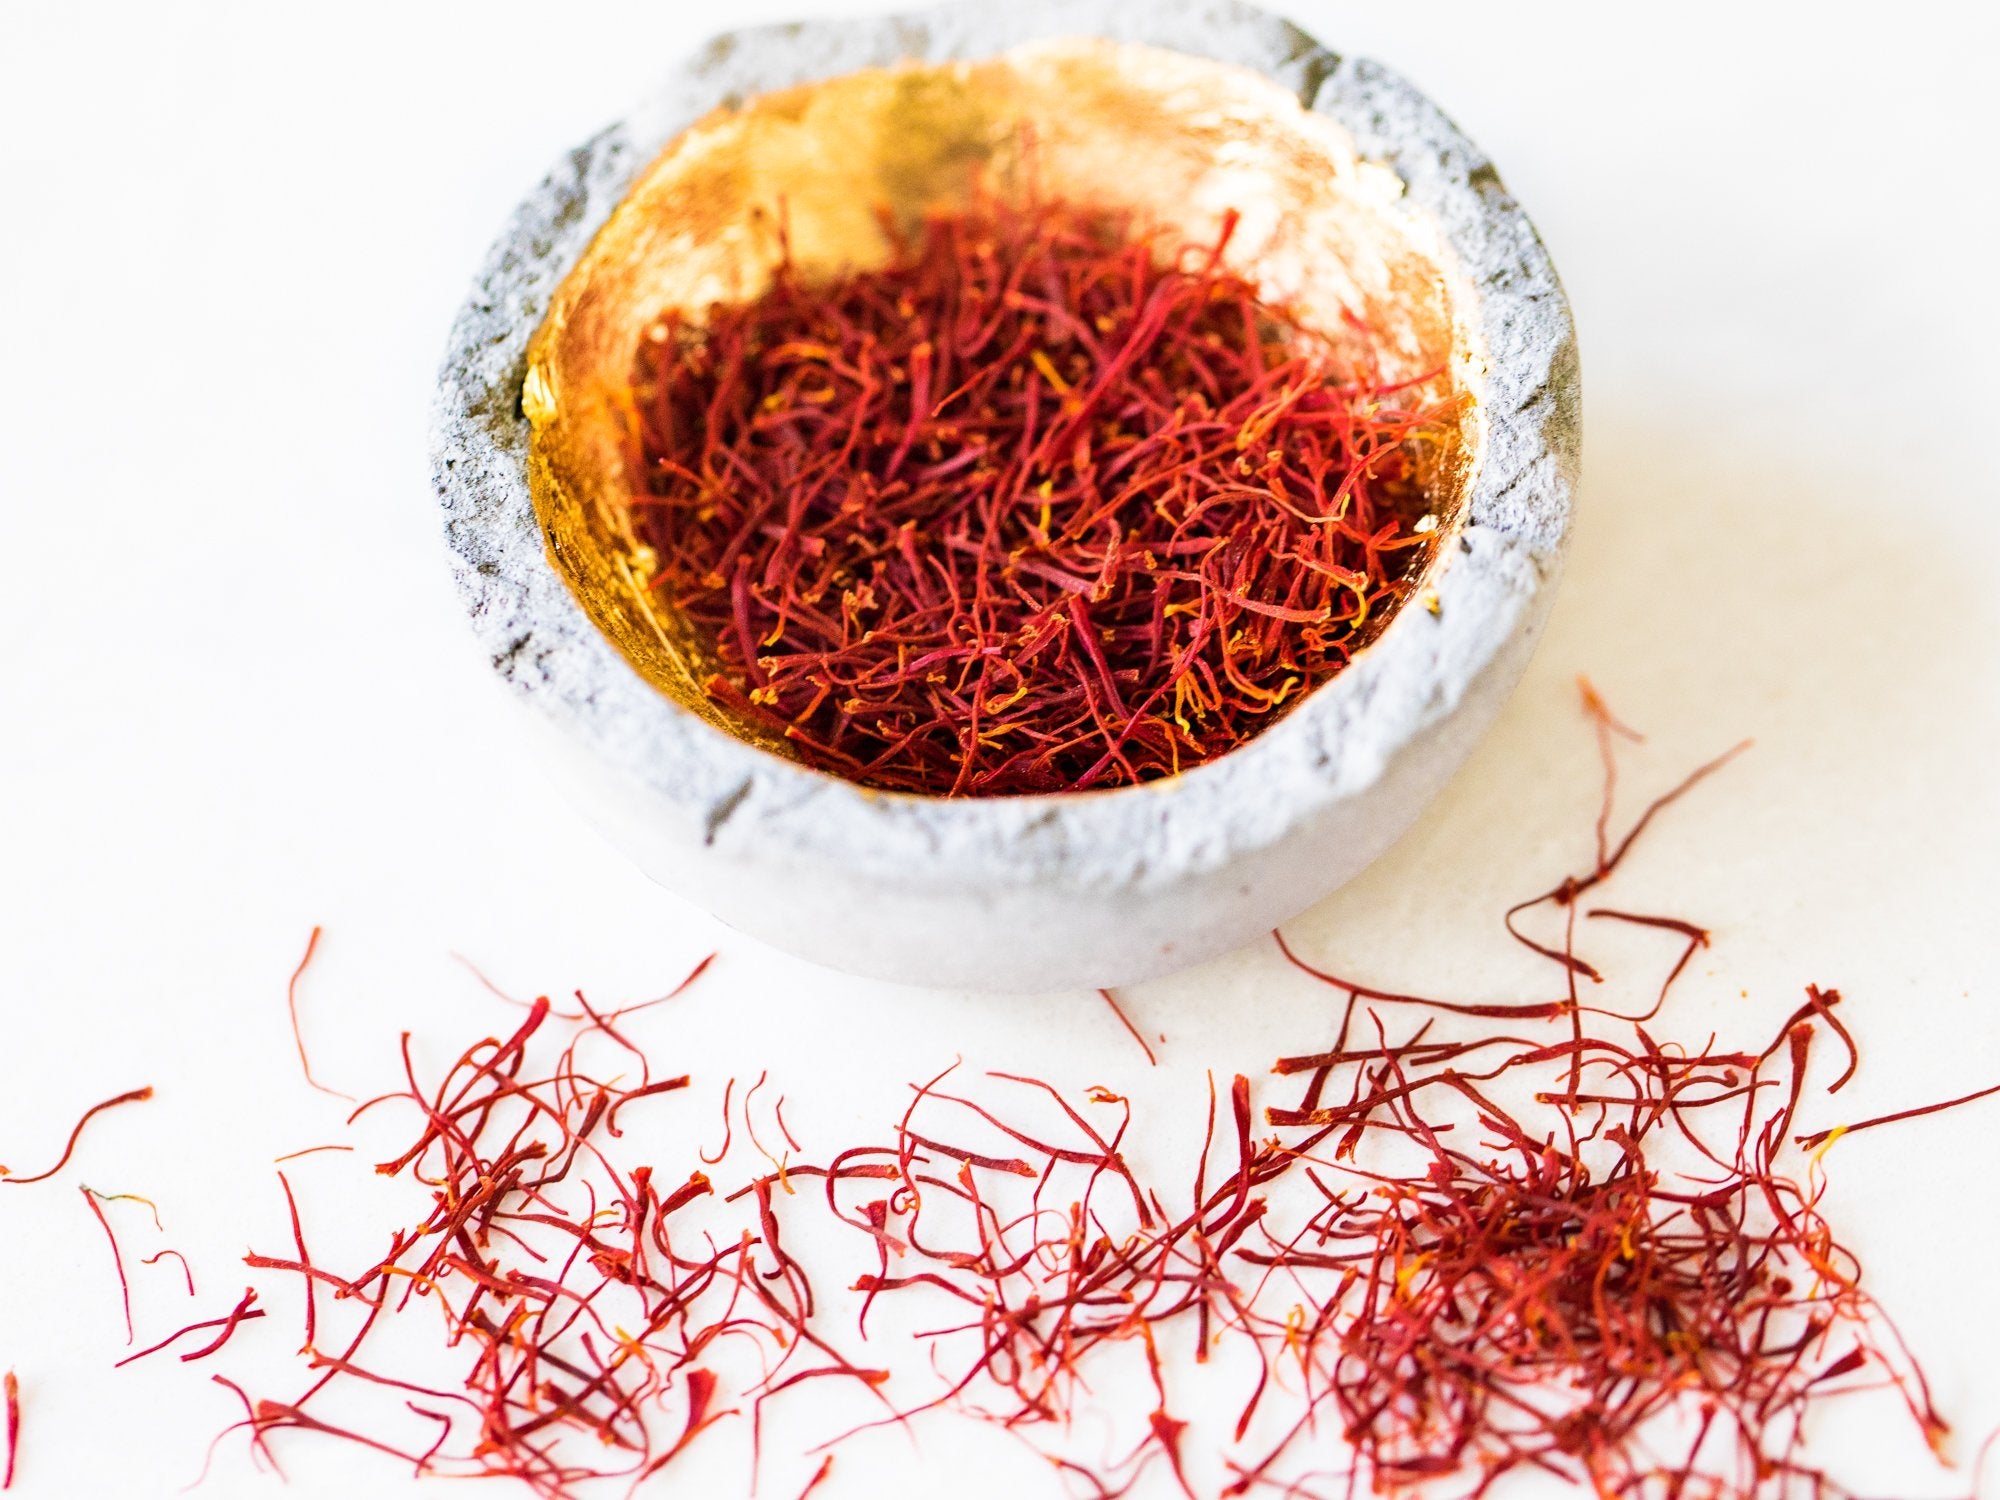 Saffron Threads, 2.0 gram, Gift Set - Rumi Spice - Rumi Spice -